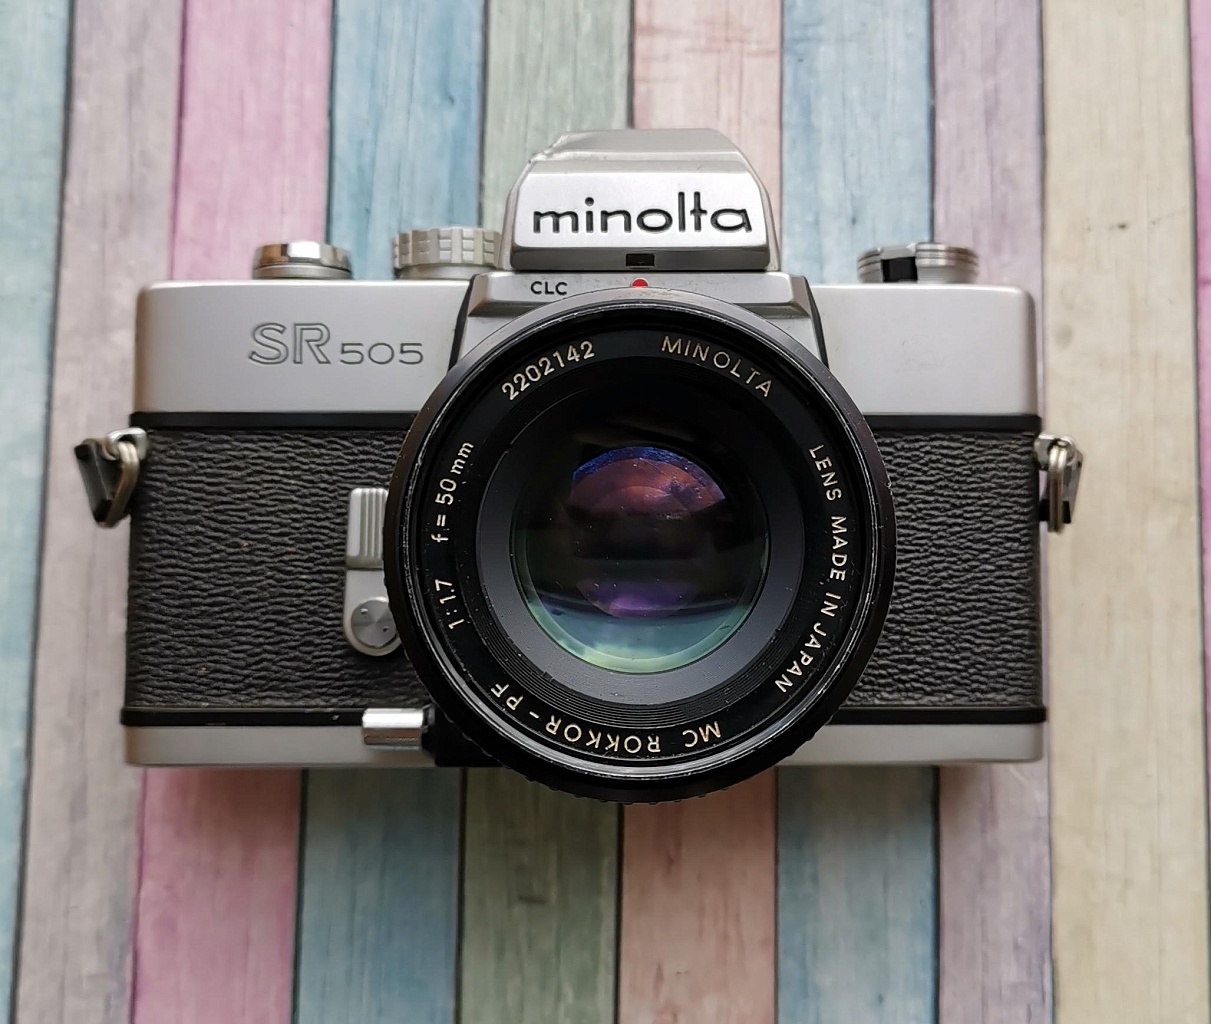 Minolta sr-505 + Minolta mc-rokkor-pf 50 mm f/1.7 фото №1